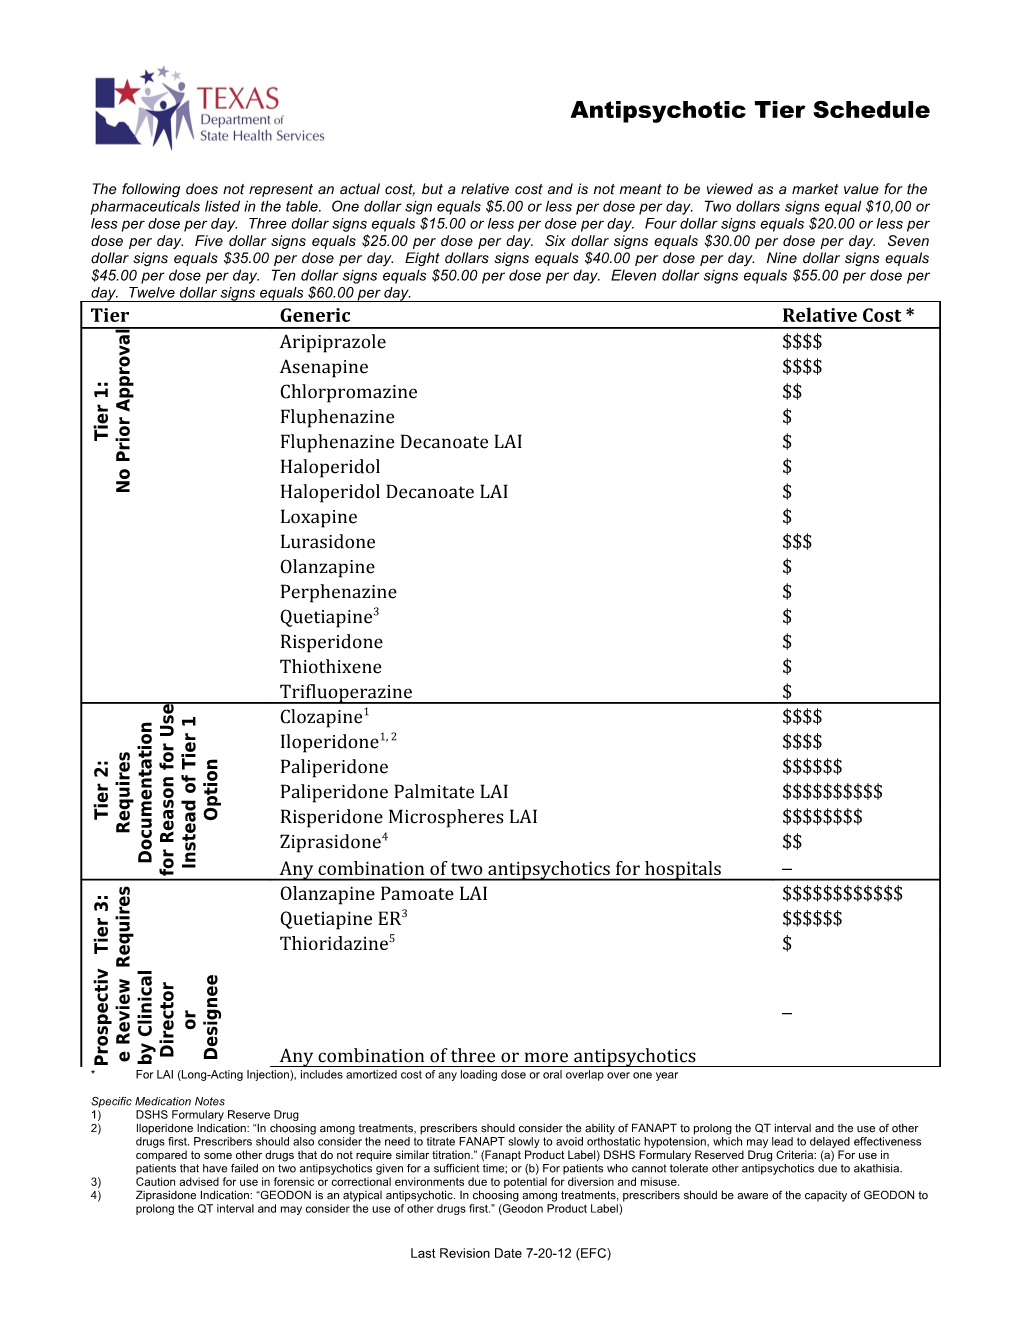 Antipsychotic Tier Schedule (Including Relative Cost) - August 2012 (MS Word)